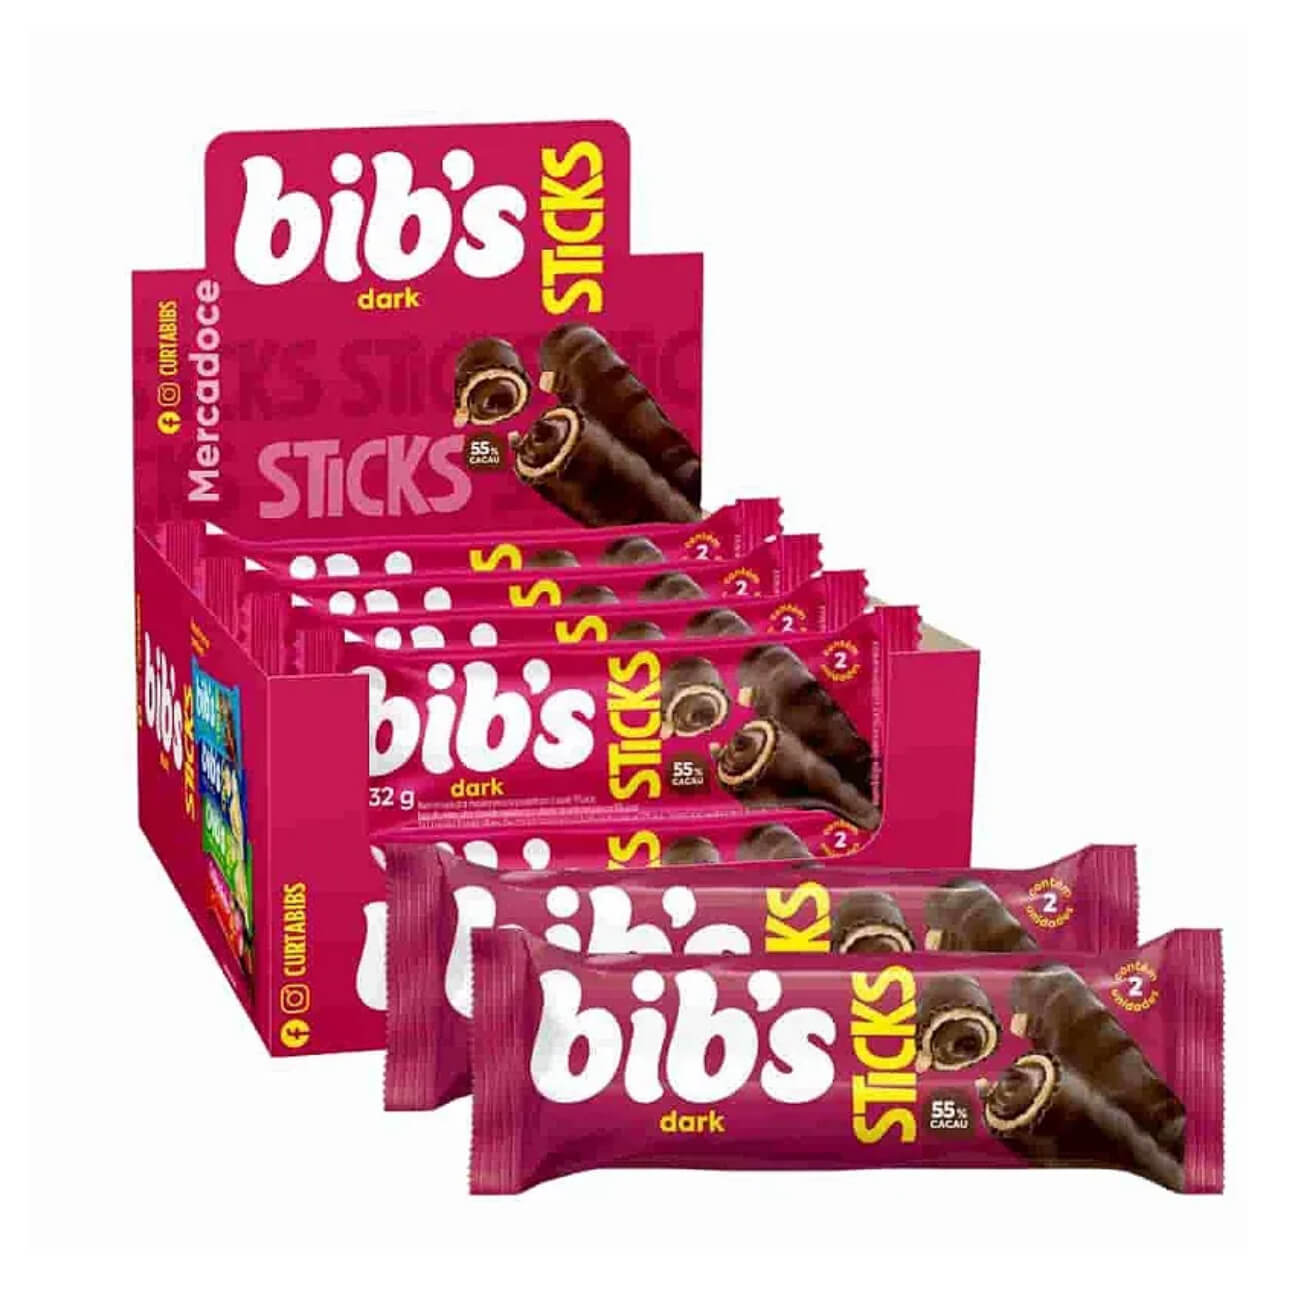 Bibs Sticks Dark 55% Cacau Neuge 32g | Caixa com 16 Unidades